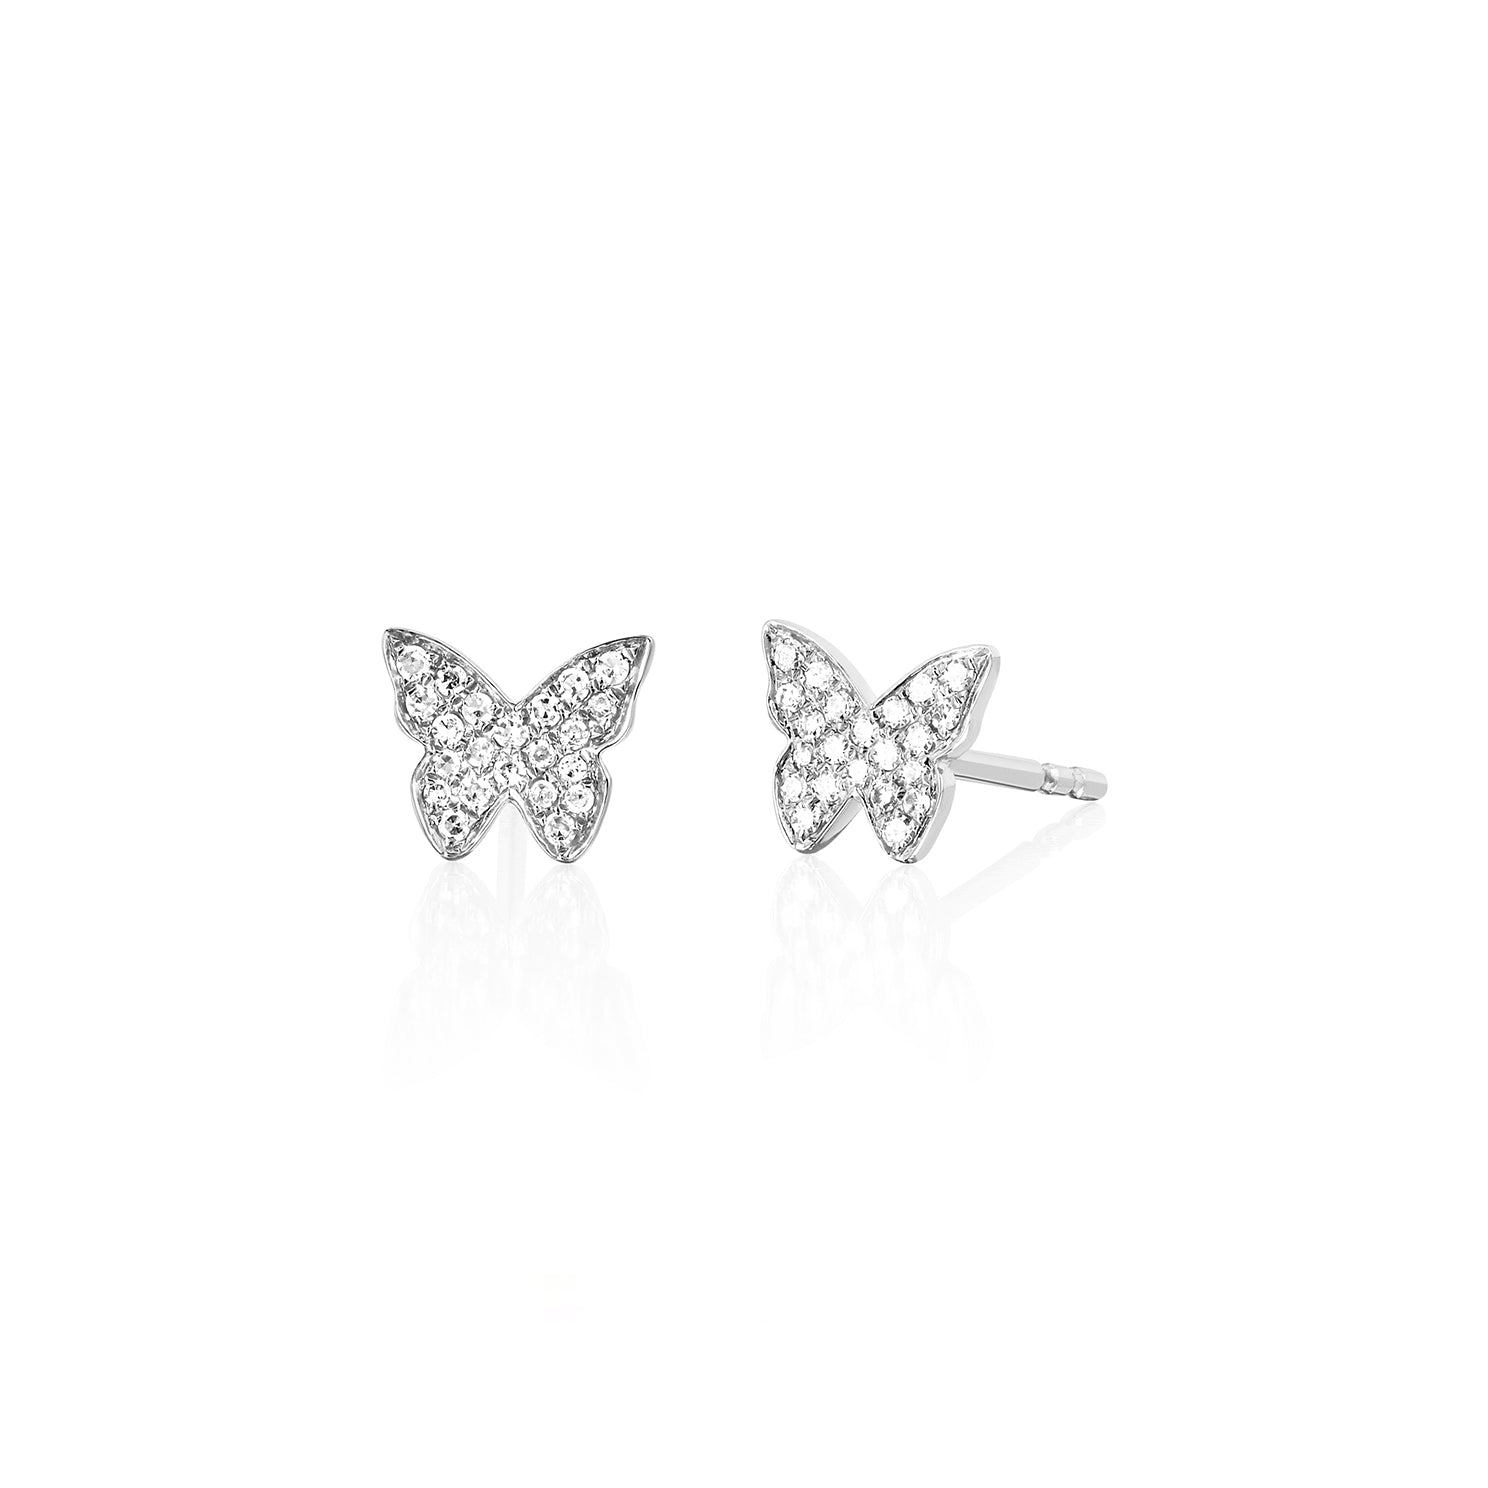 Butterfly Opal Earrings - 925 Sterling Silver - GREEK ROOTS